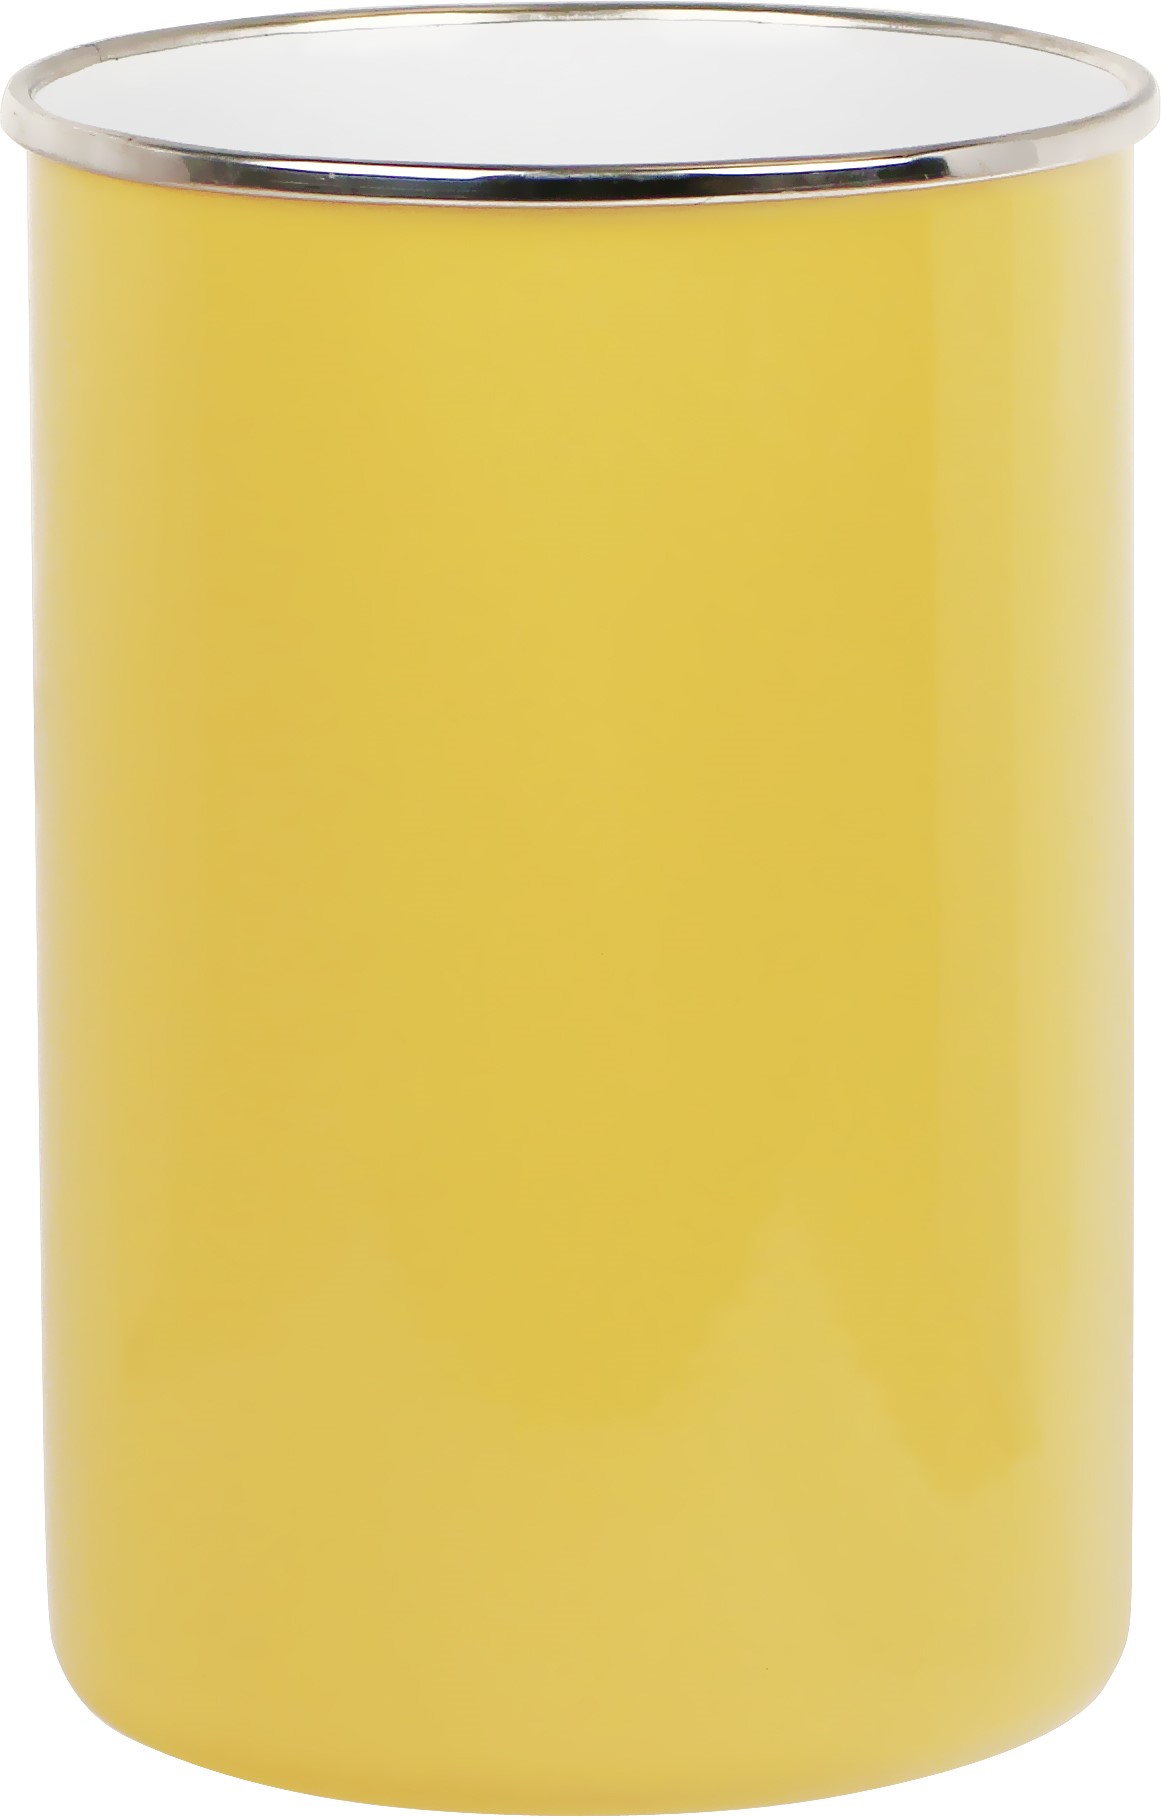 82201 Lemon - Utensil Jar